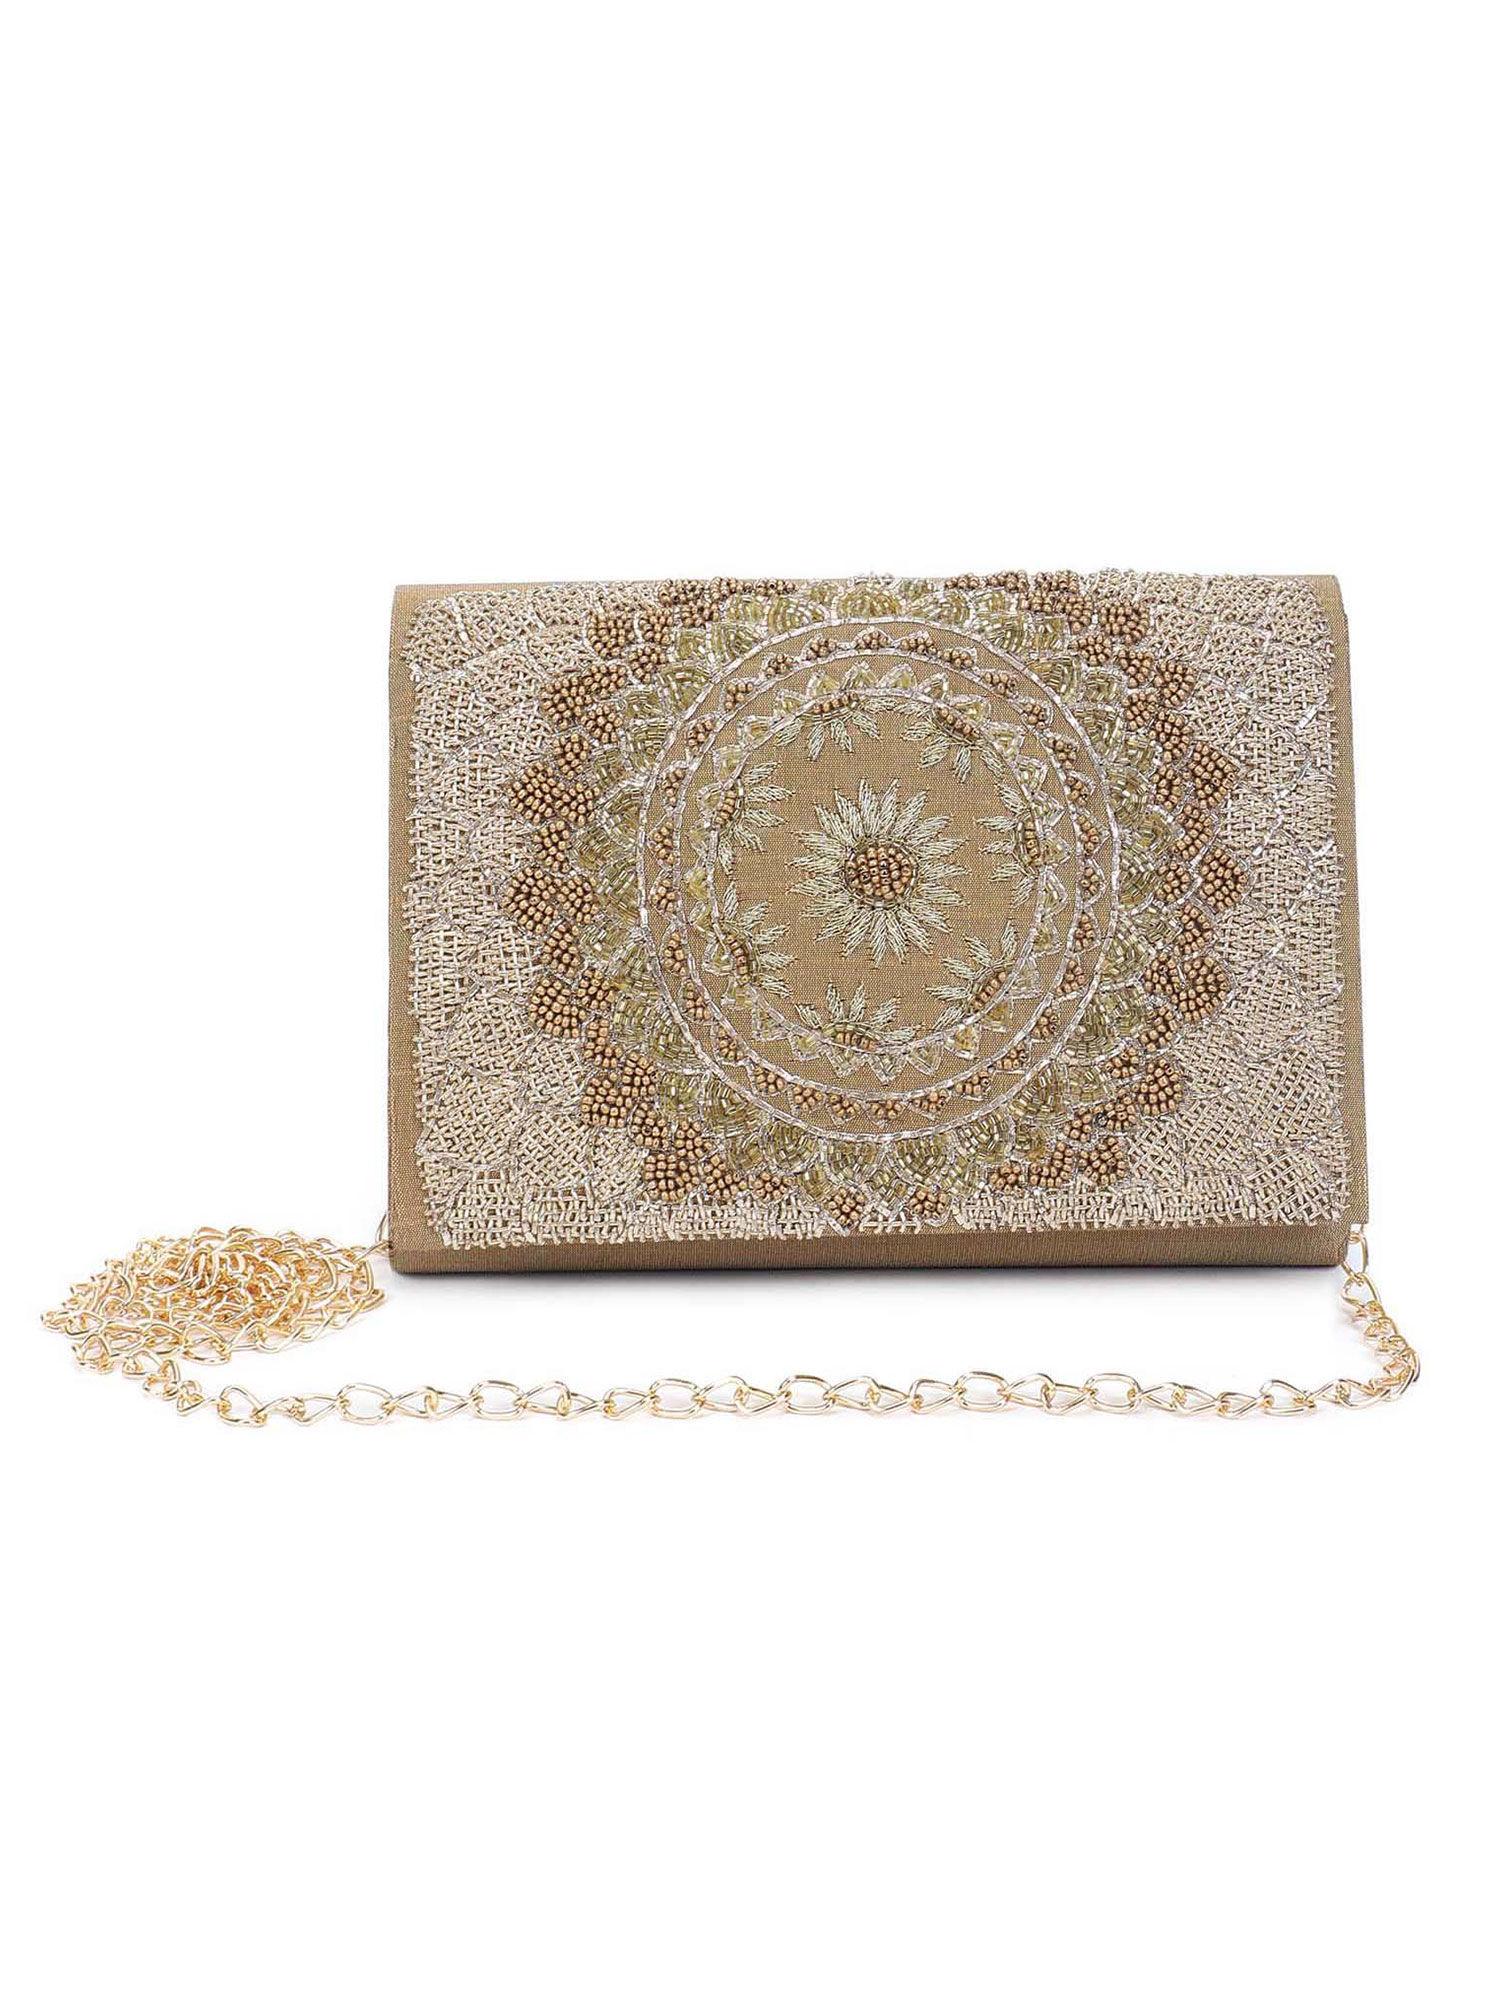 gold embroidered sling bag